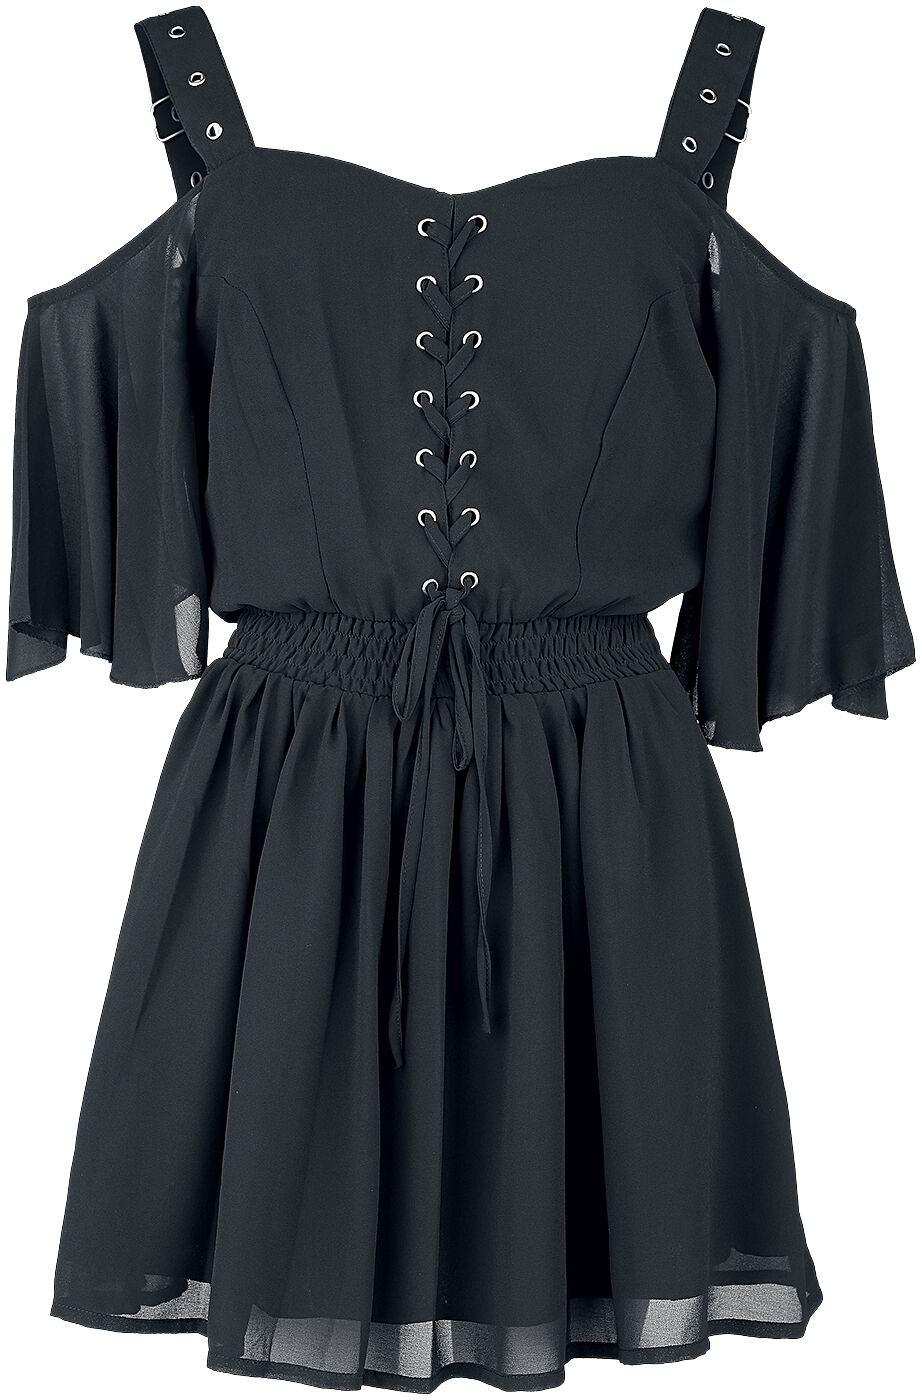 Poizen Industries Catastrophe Dress Kurzes Kleid schwarz in XL